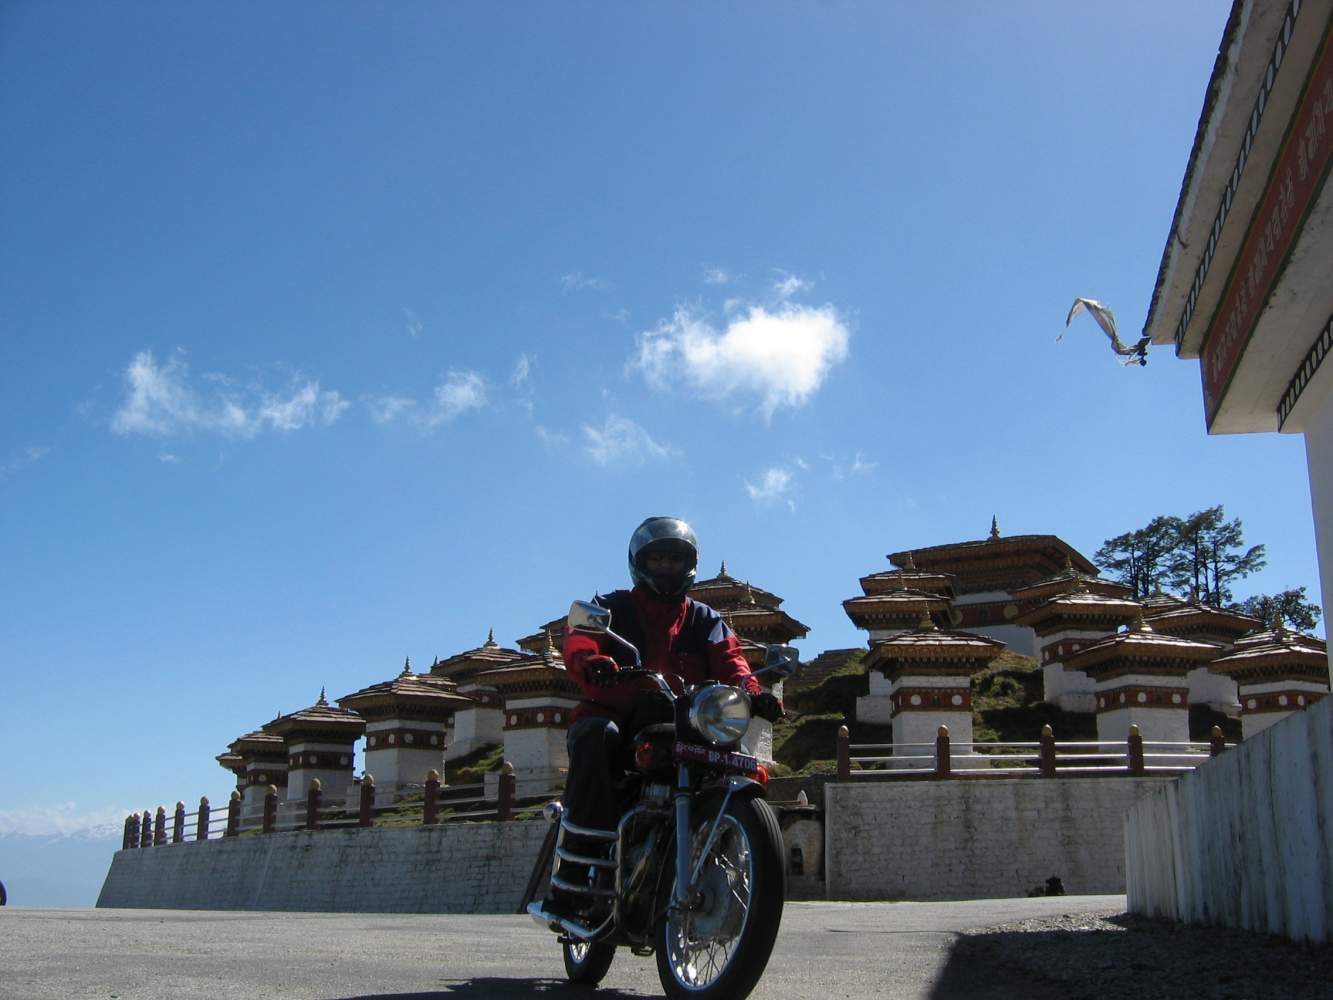 Motorradfahrer auf einer Royal Enfield vor einer Tempelanlage in Bhutan